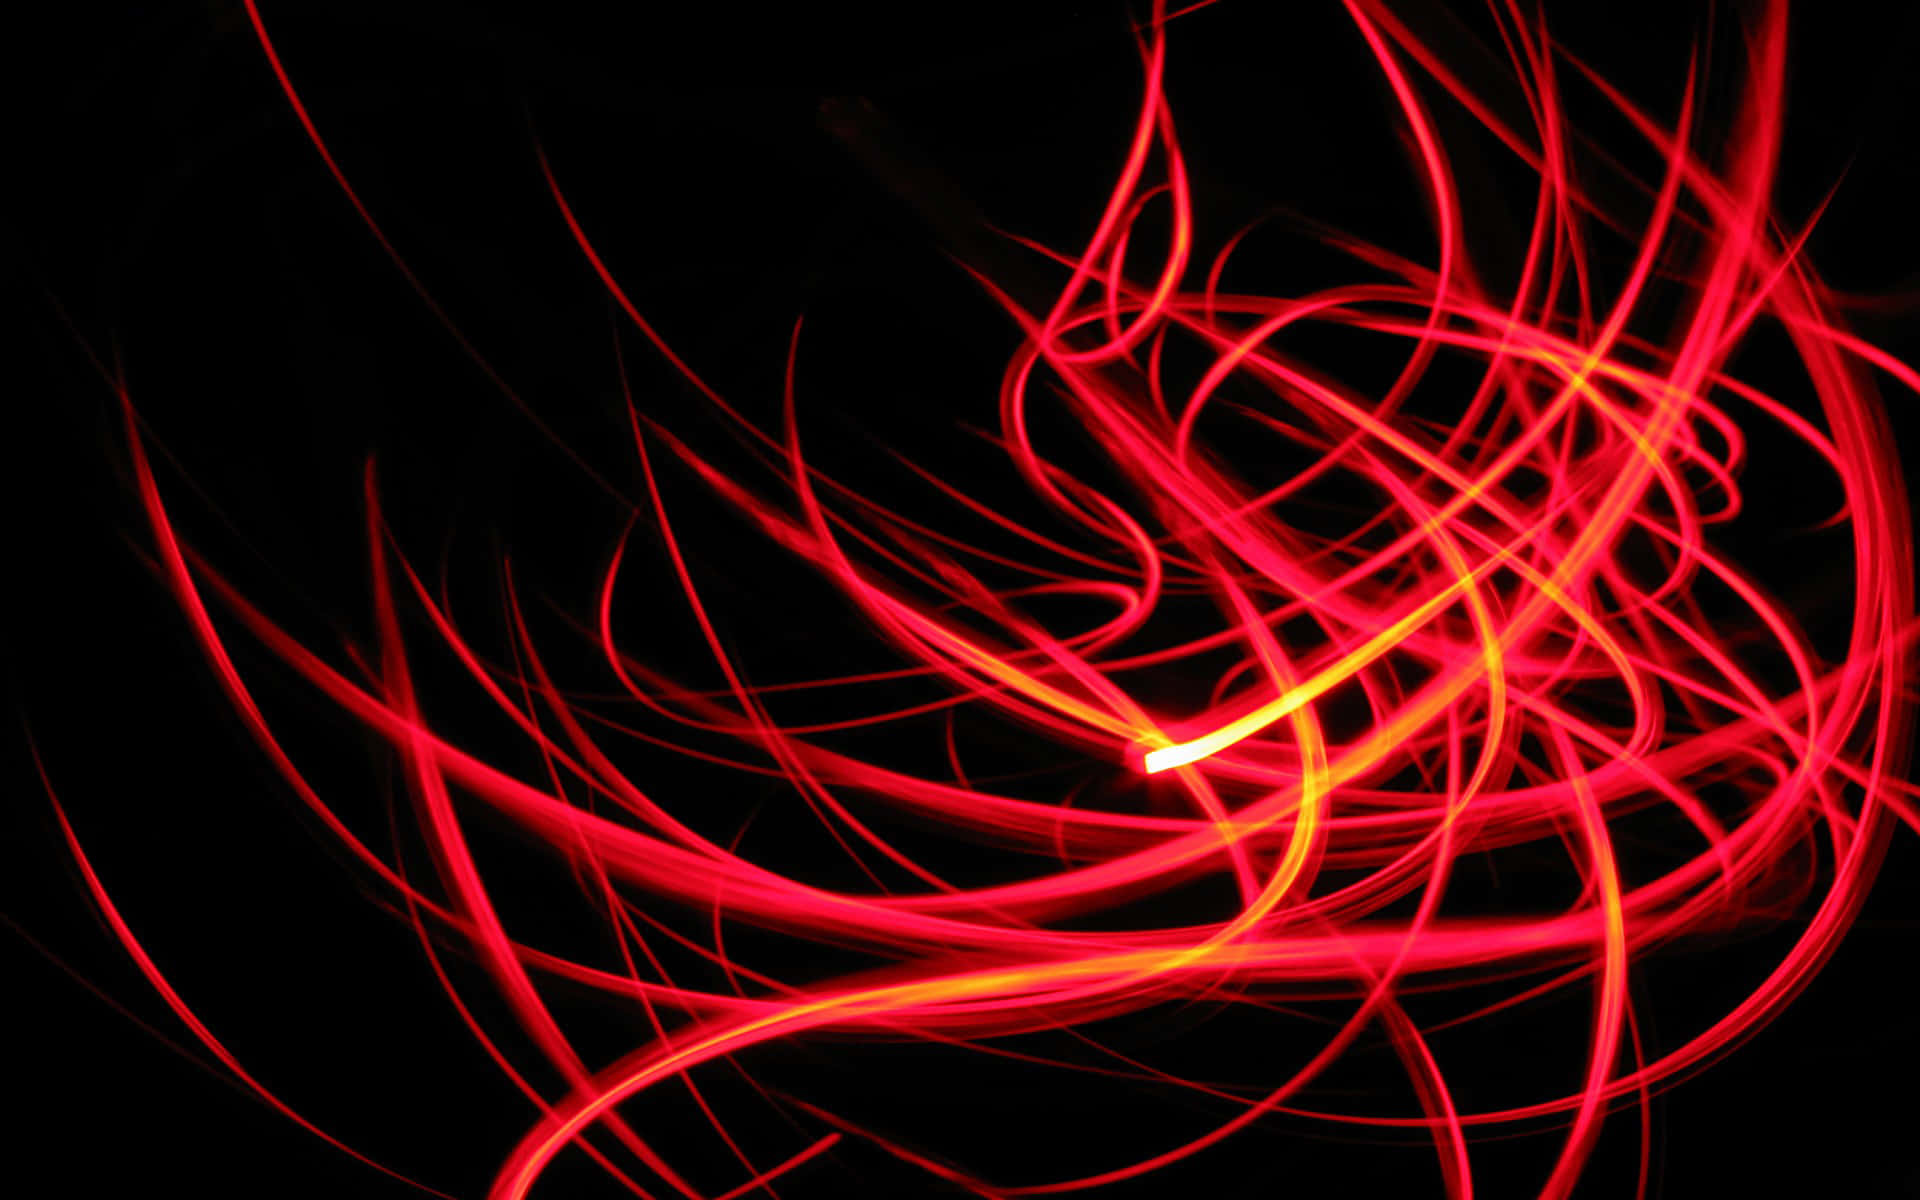 Enlivlig Röd Neonbakgrund Perfekt För Att Dra Uppmärksamhet Till Ditt Projekt.